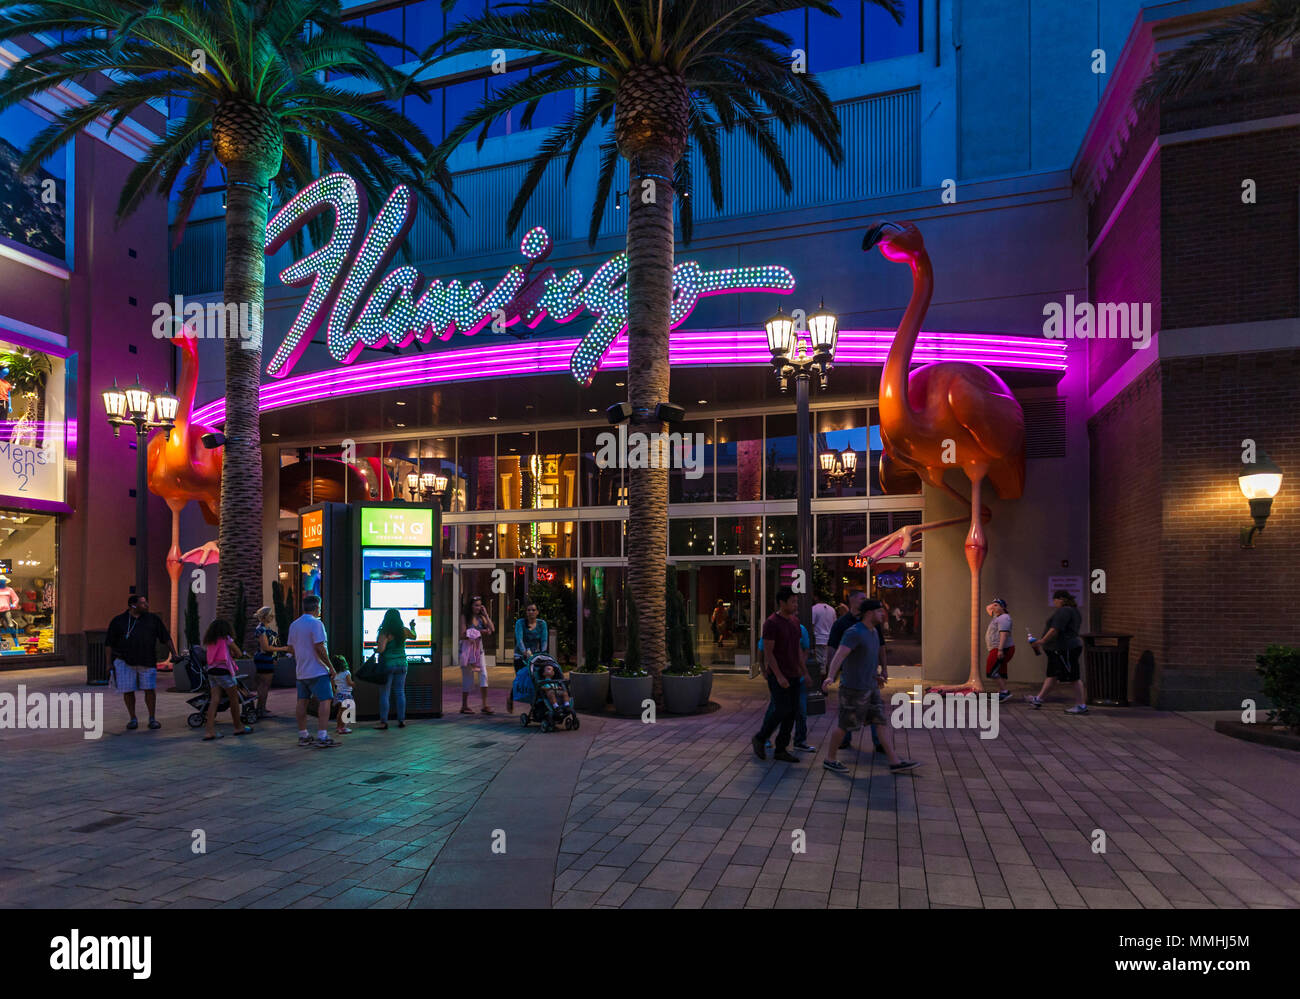 I turisti oltrepassando la viola e rosa luci al neon all'ingresso del Flamingo Las Vegas Hotel e Casinò sulla Strip di Las Vegas in paradiso, Nevada Foto Stock